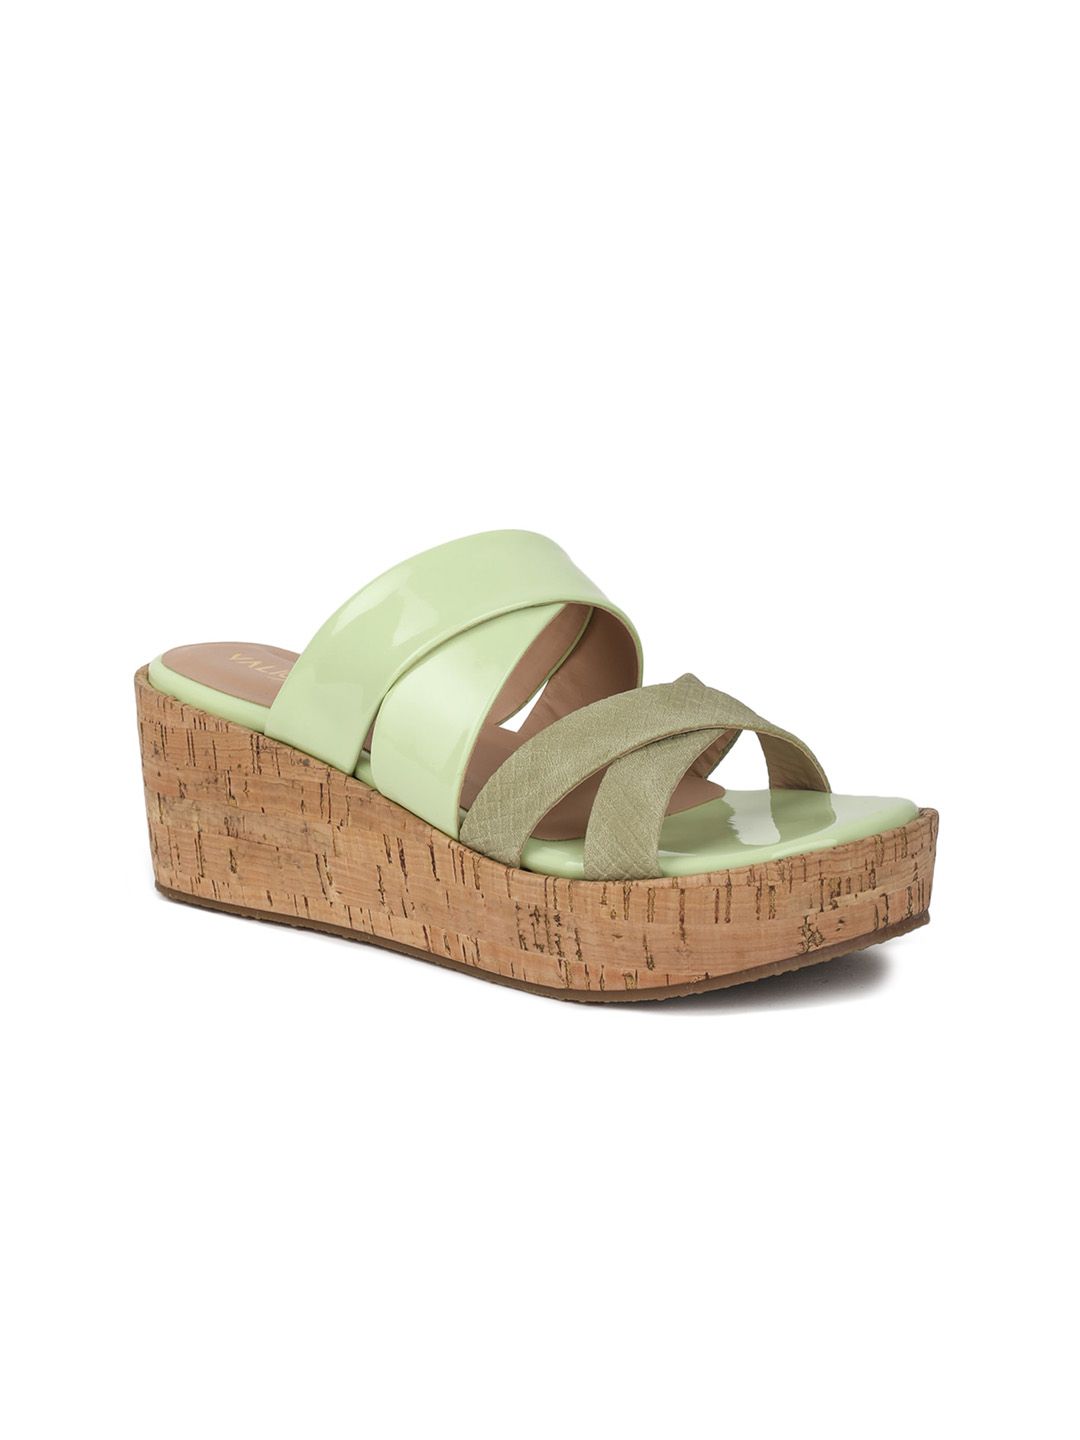 VALIOSAA Green Flatform Sandals 2 Inch Heels Price in India